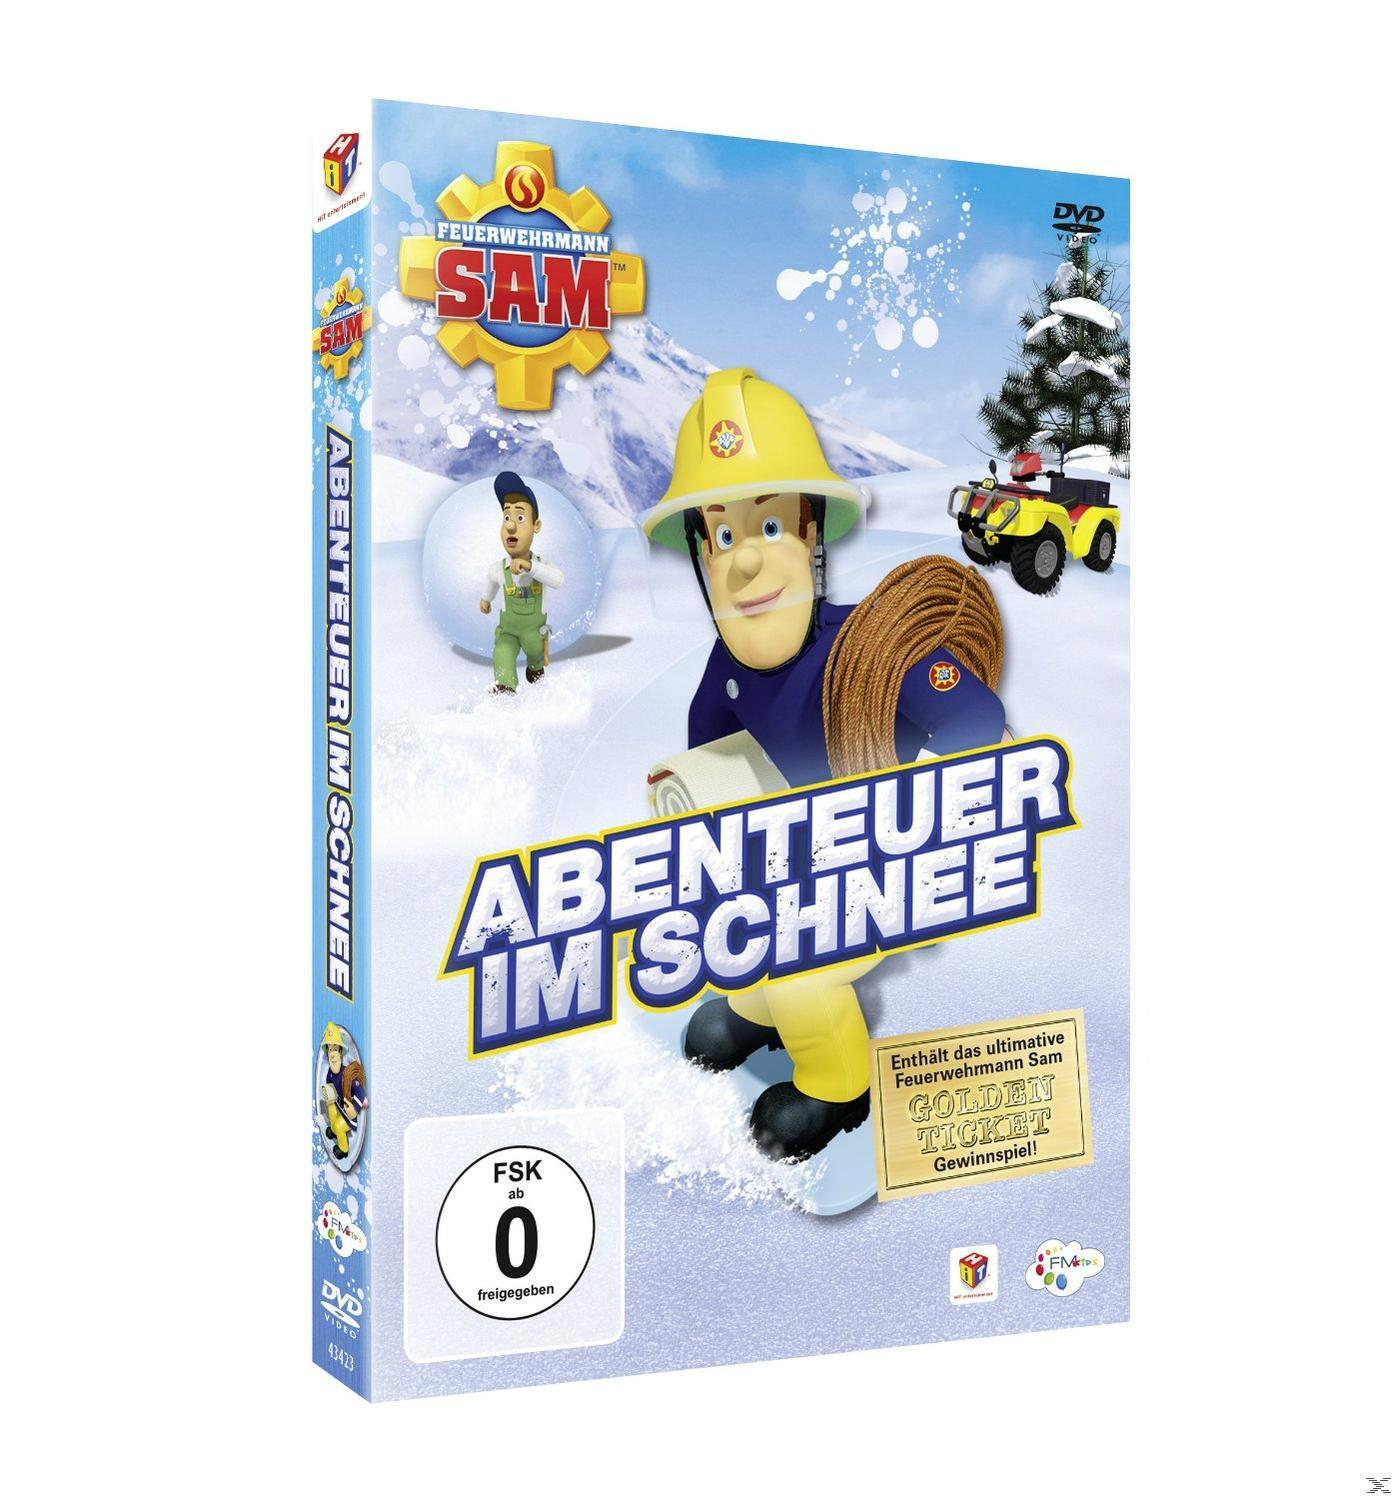 Staffel - Sam 8.4 Schnee Abenteuer Feuerwehrmann im - DVD